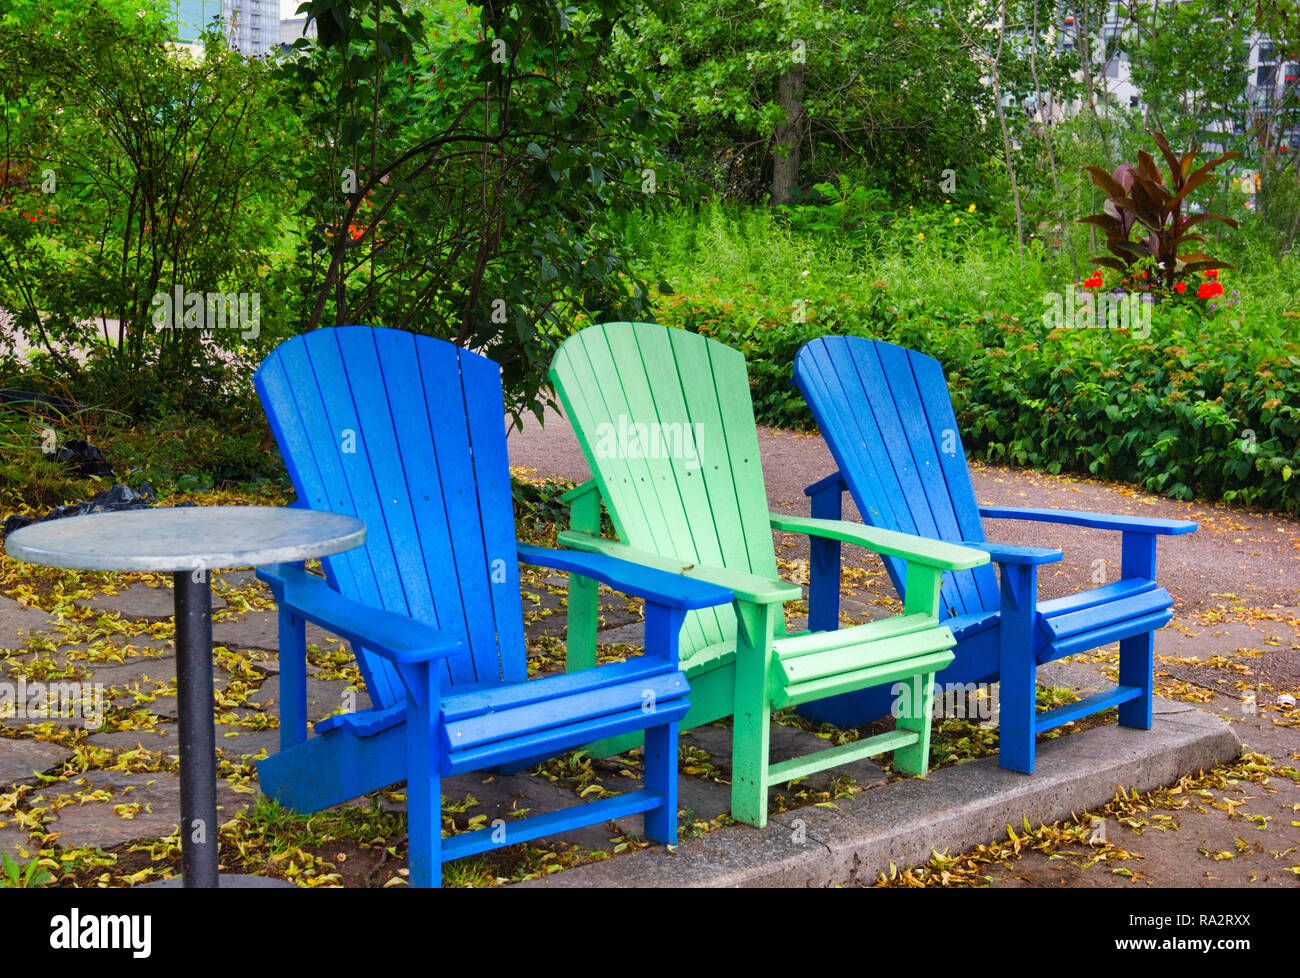 Vide trois chaises Adirondack en Park, Toronto, Ontario, Canada Banque D'Images